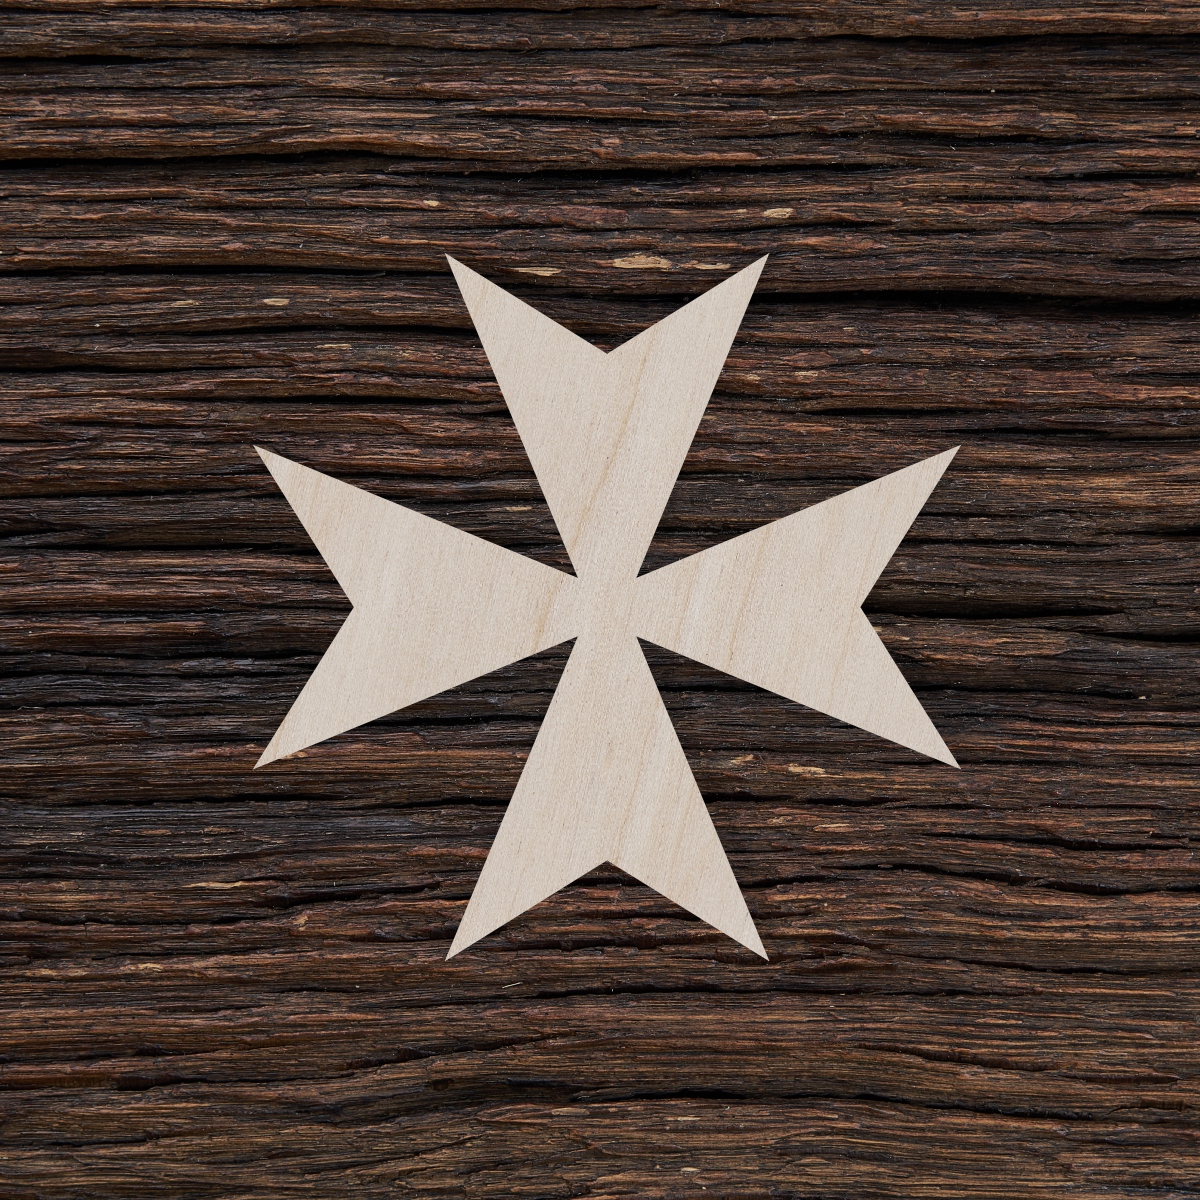 6Maltos kryžius - medinis gaminys, pjautas lazeriu - dekoravimui ir dažymui